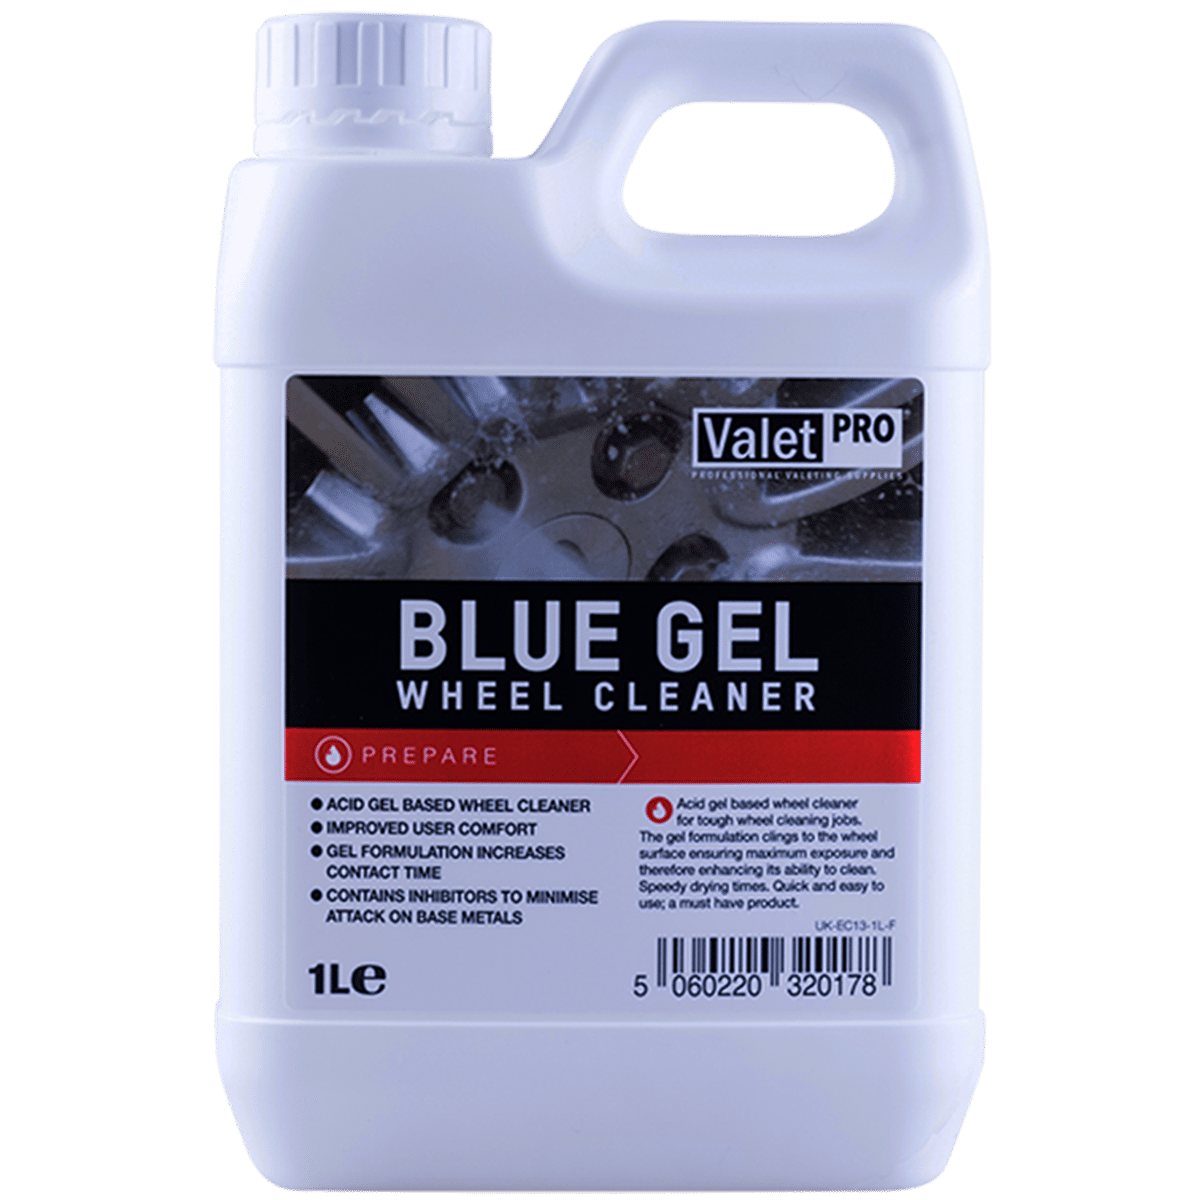 ValetPRO Blue Gel Wheel Cleaner 1l Preparat w Formie Żelu Przeznaczony do Czyszczenia Felg